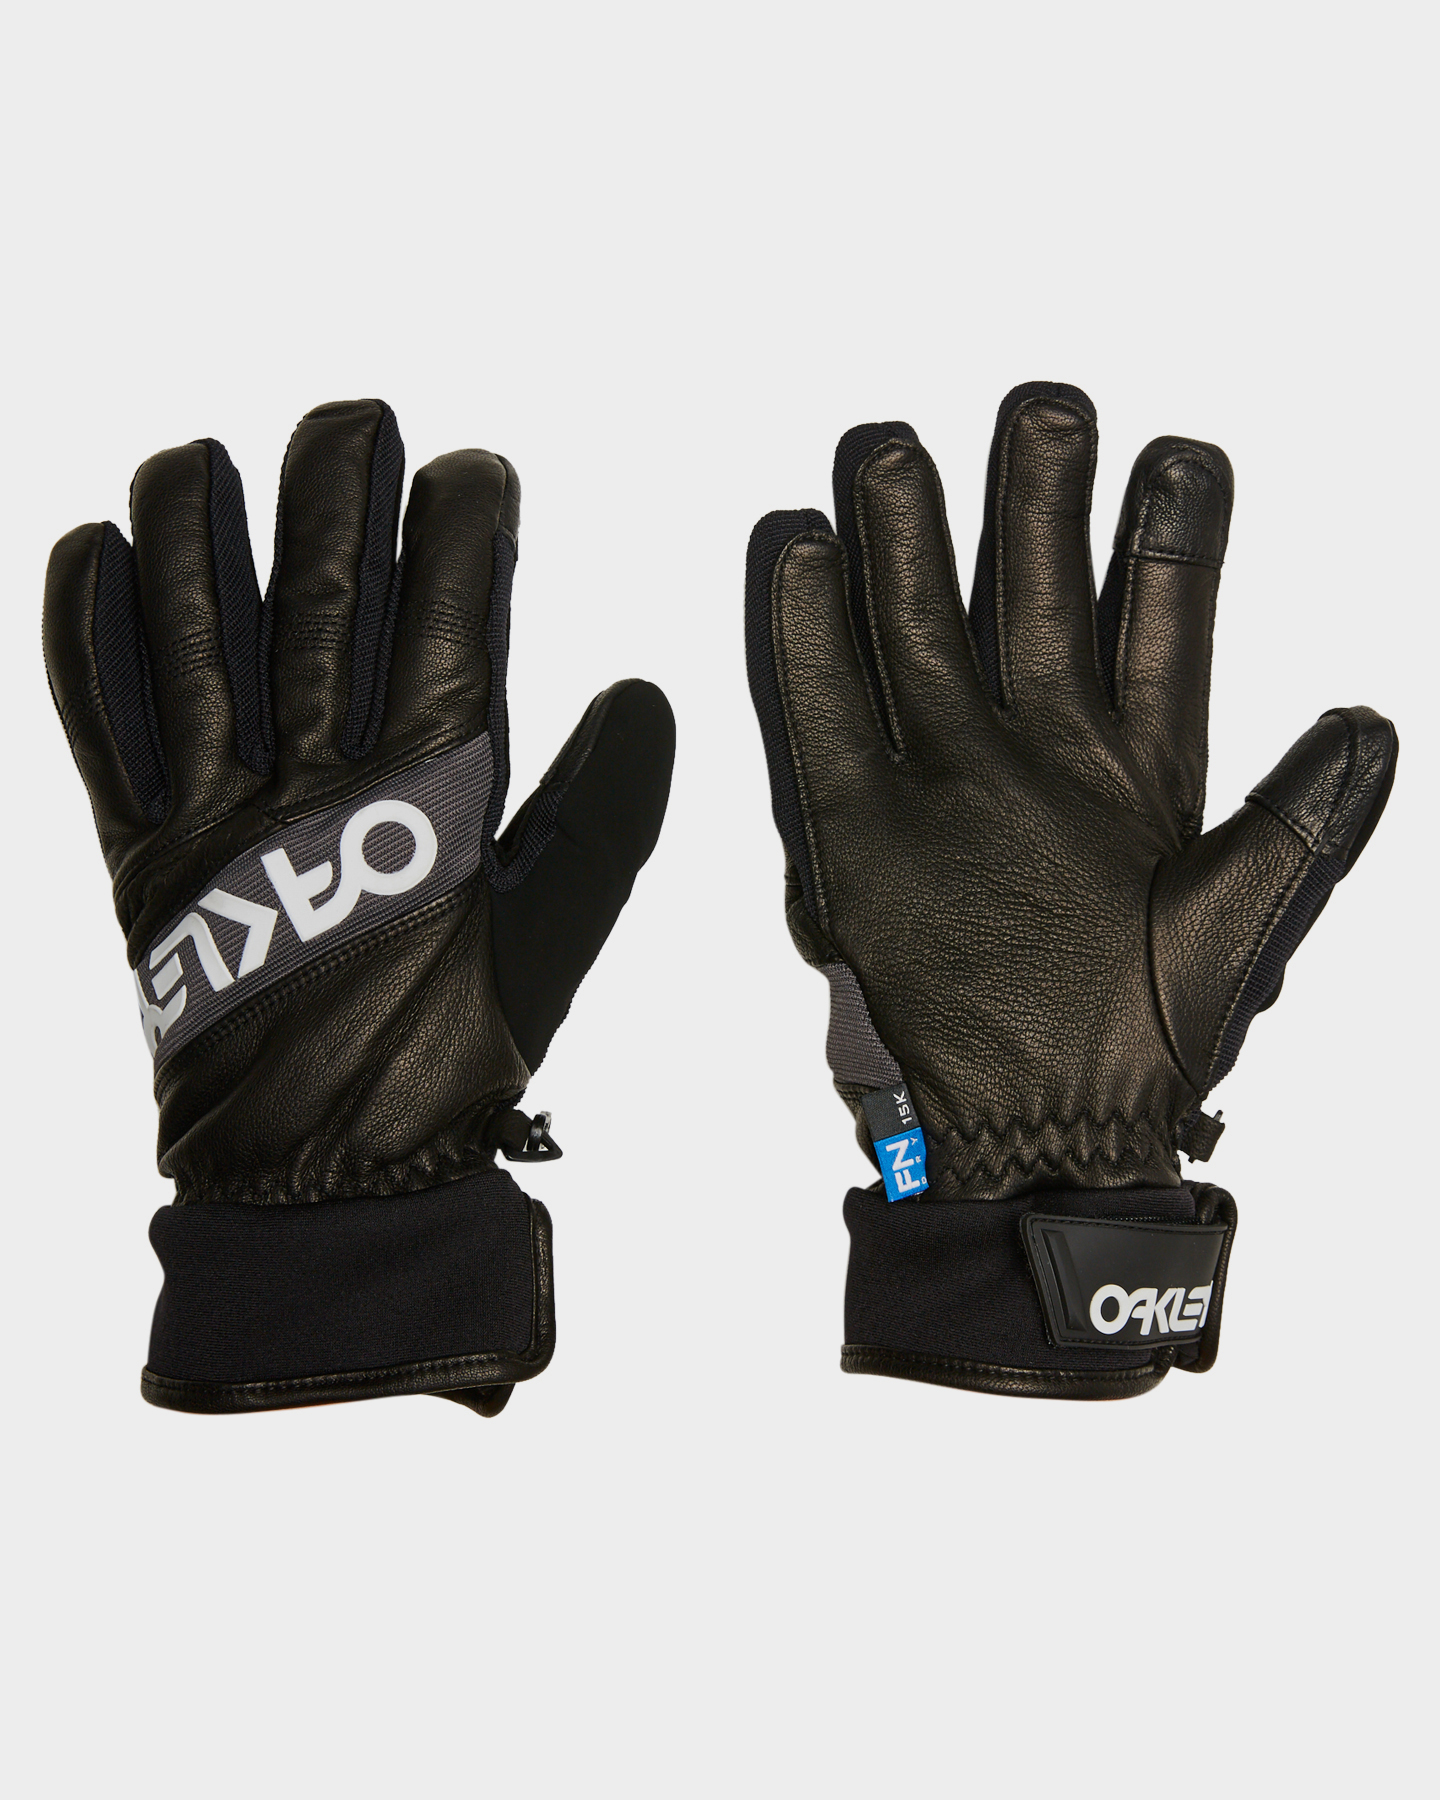 oakley factory winter 2 gloves